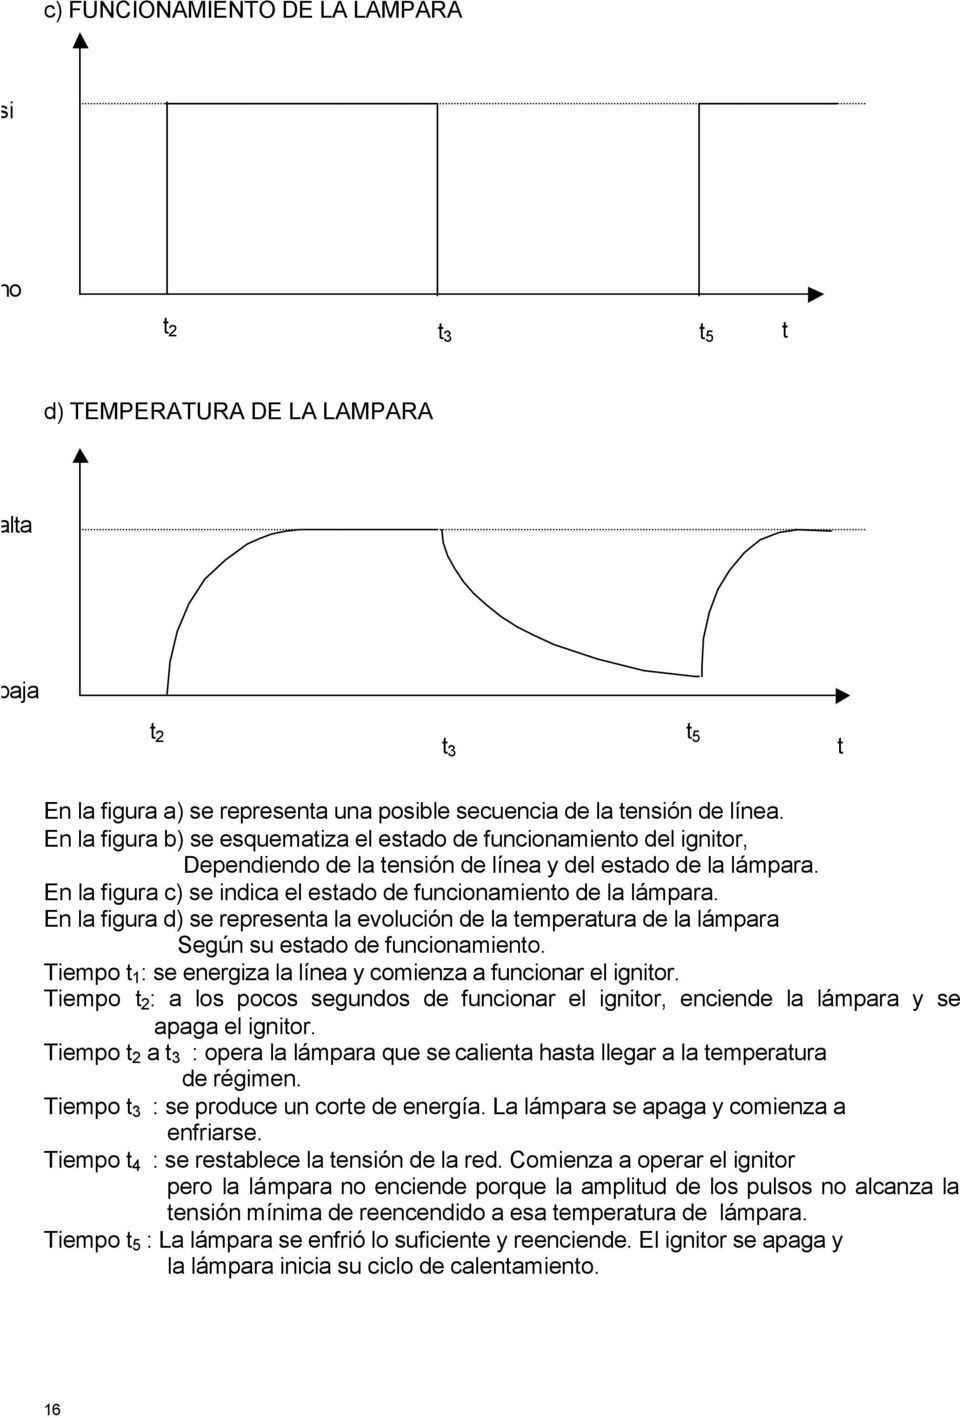 En la figura c) se indica el estado de funcionamiento de la lámpara. En la figura d) se representa la evolución de la temperatura de la lámpara Según su estado de funcionamiento.